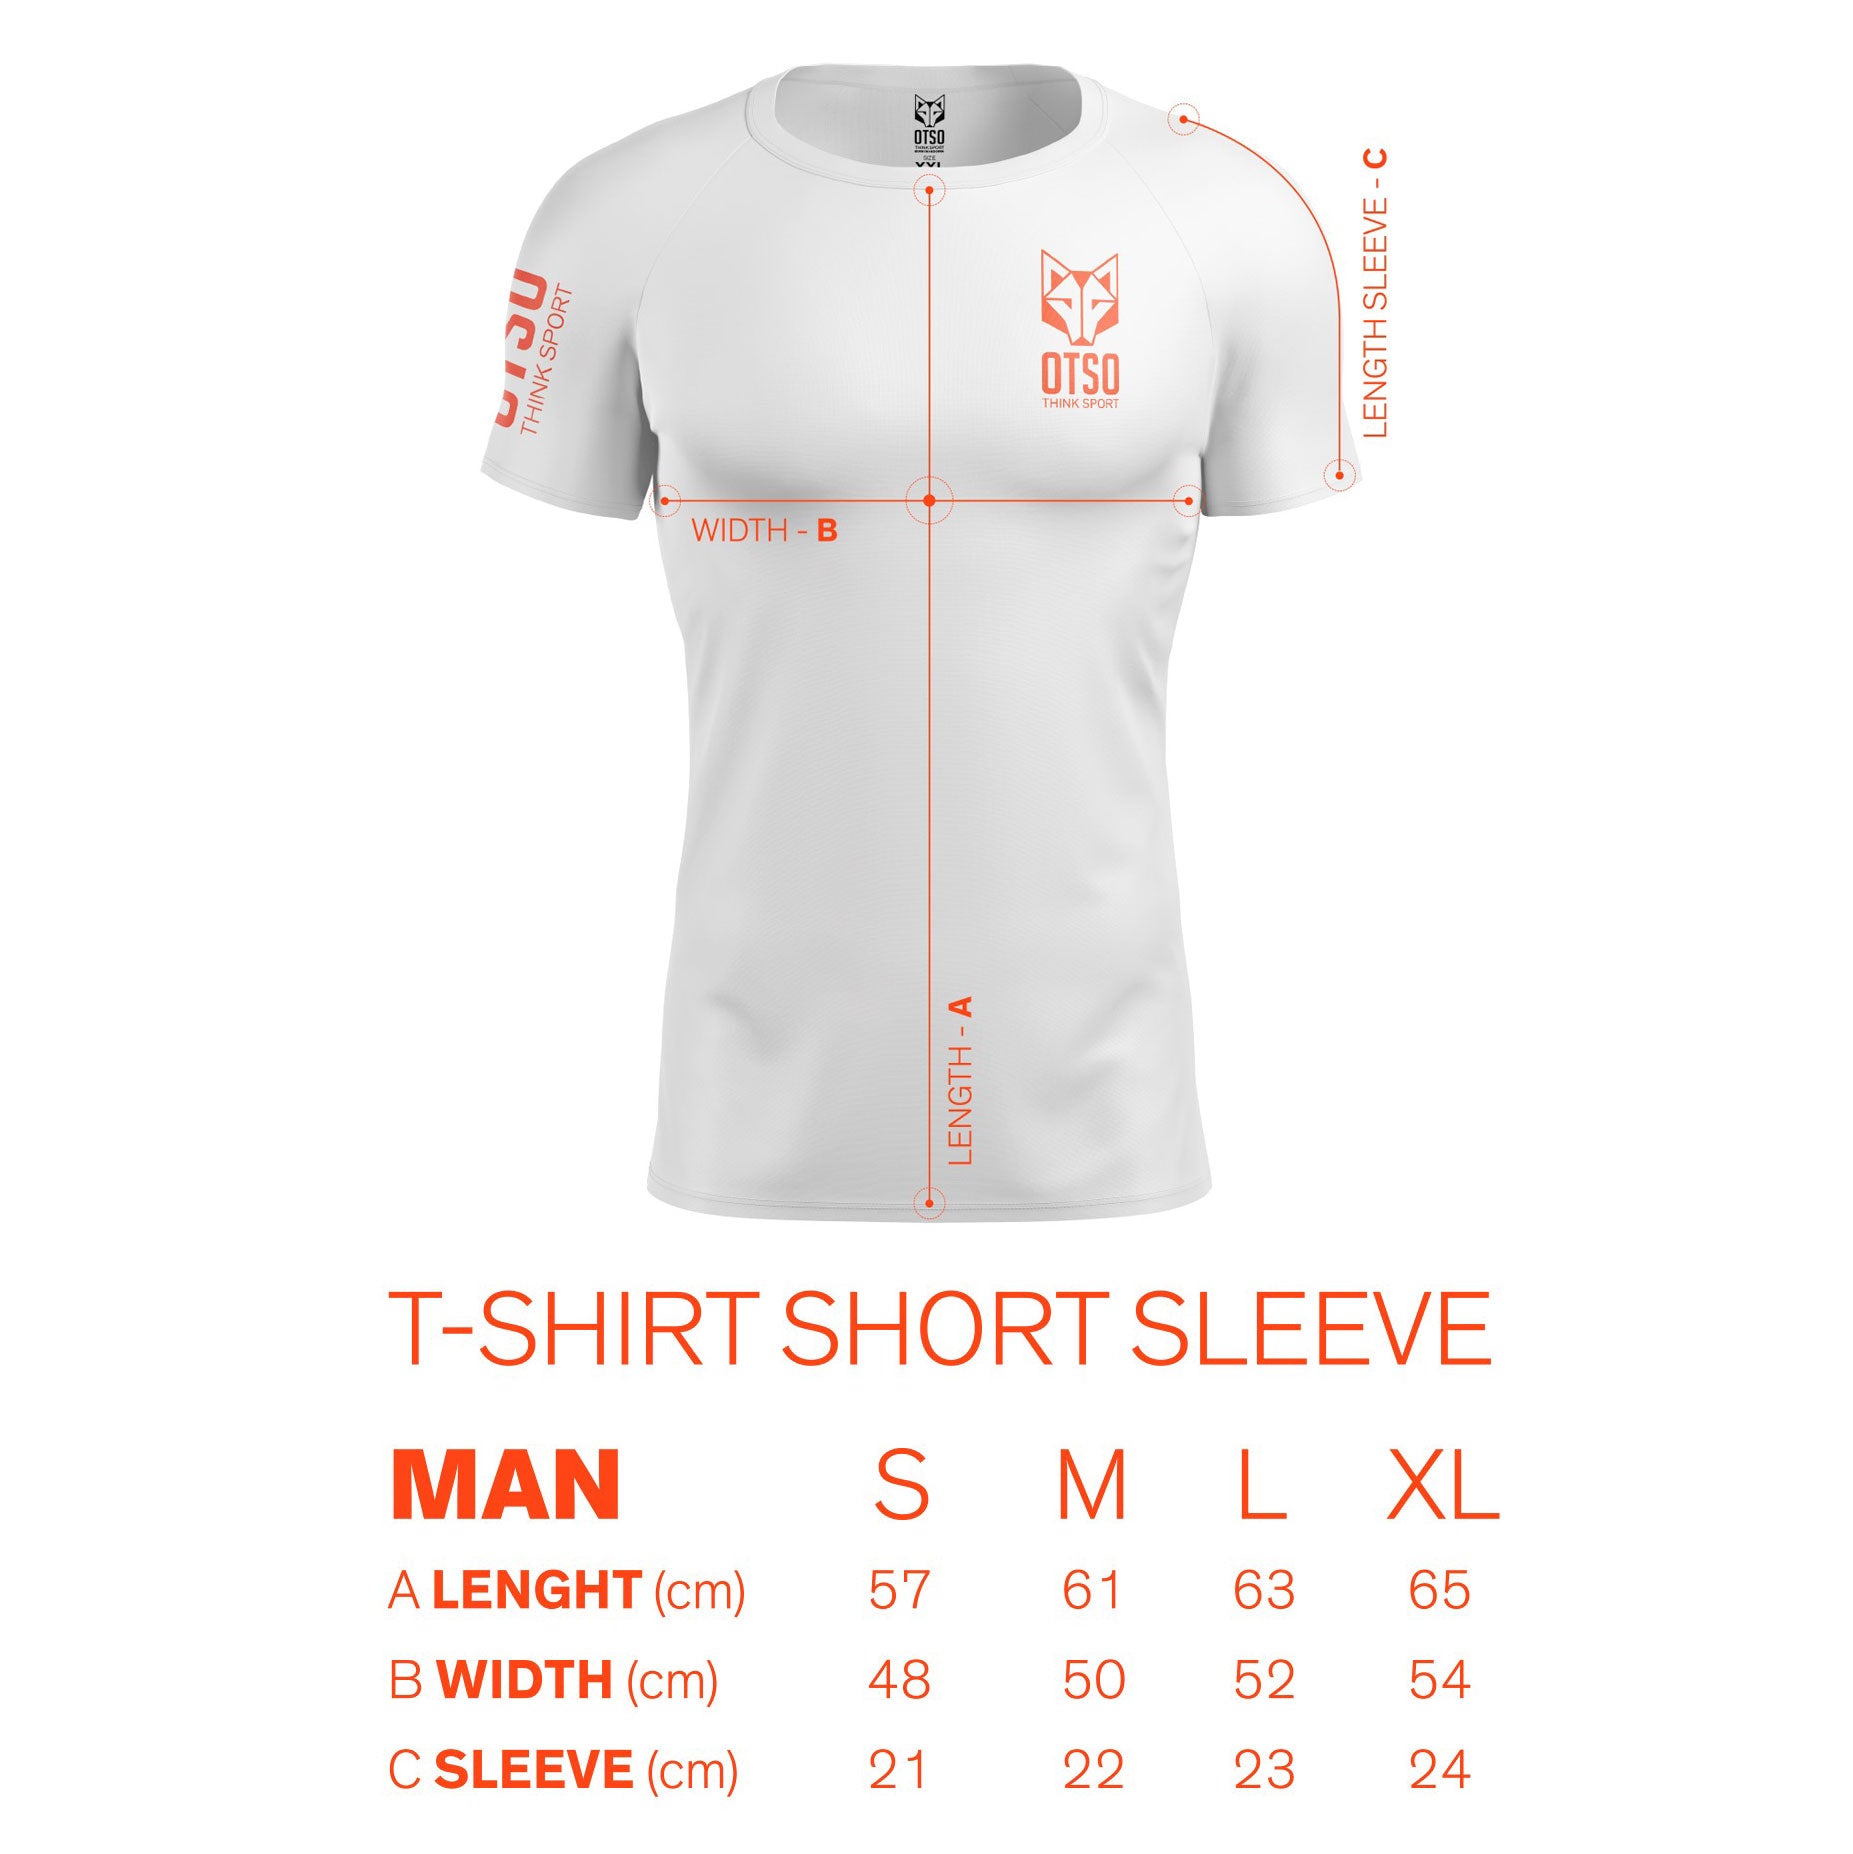 Men's short sleeve t-shirt - Giraffe